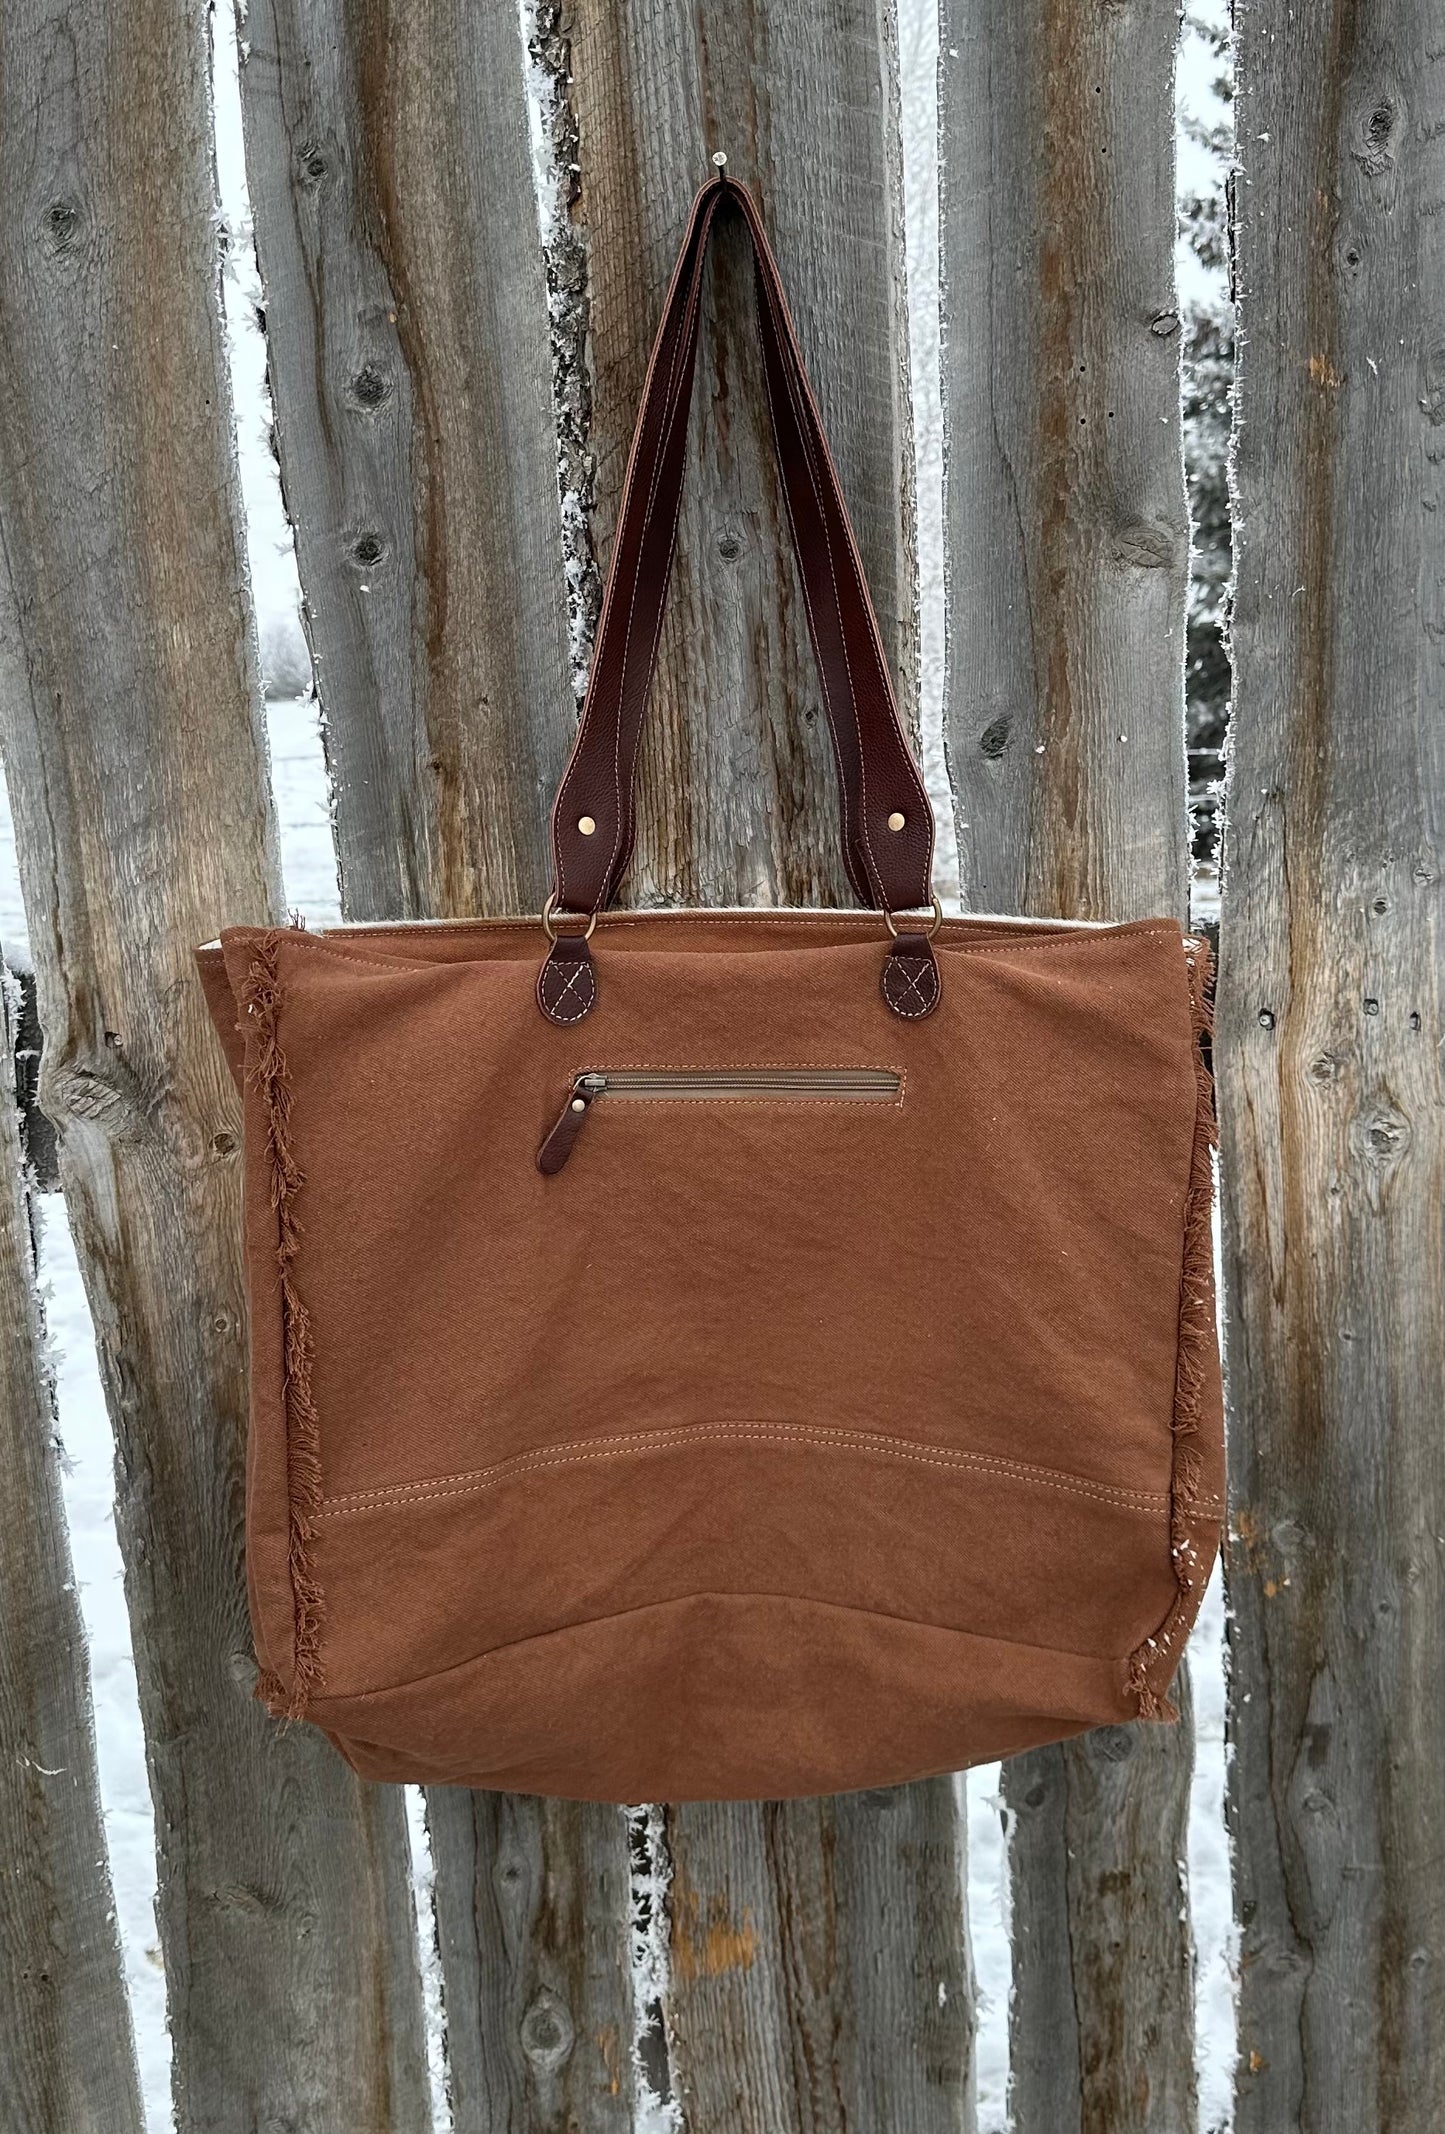 Brown & White Cowhide Turquoise Embossed Leather Weekender Bag